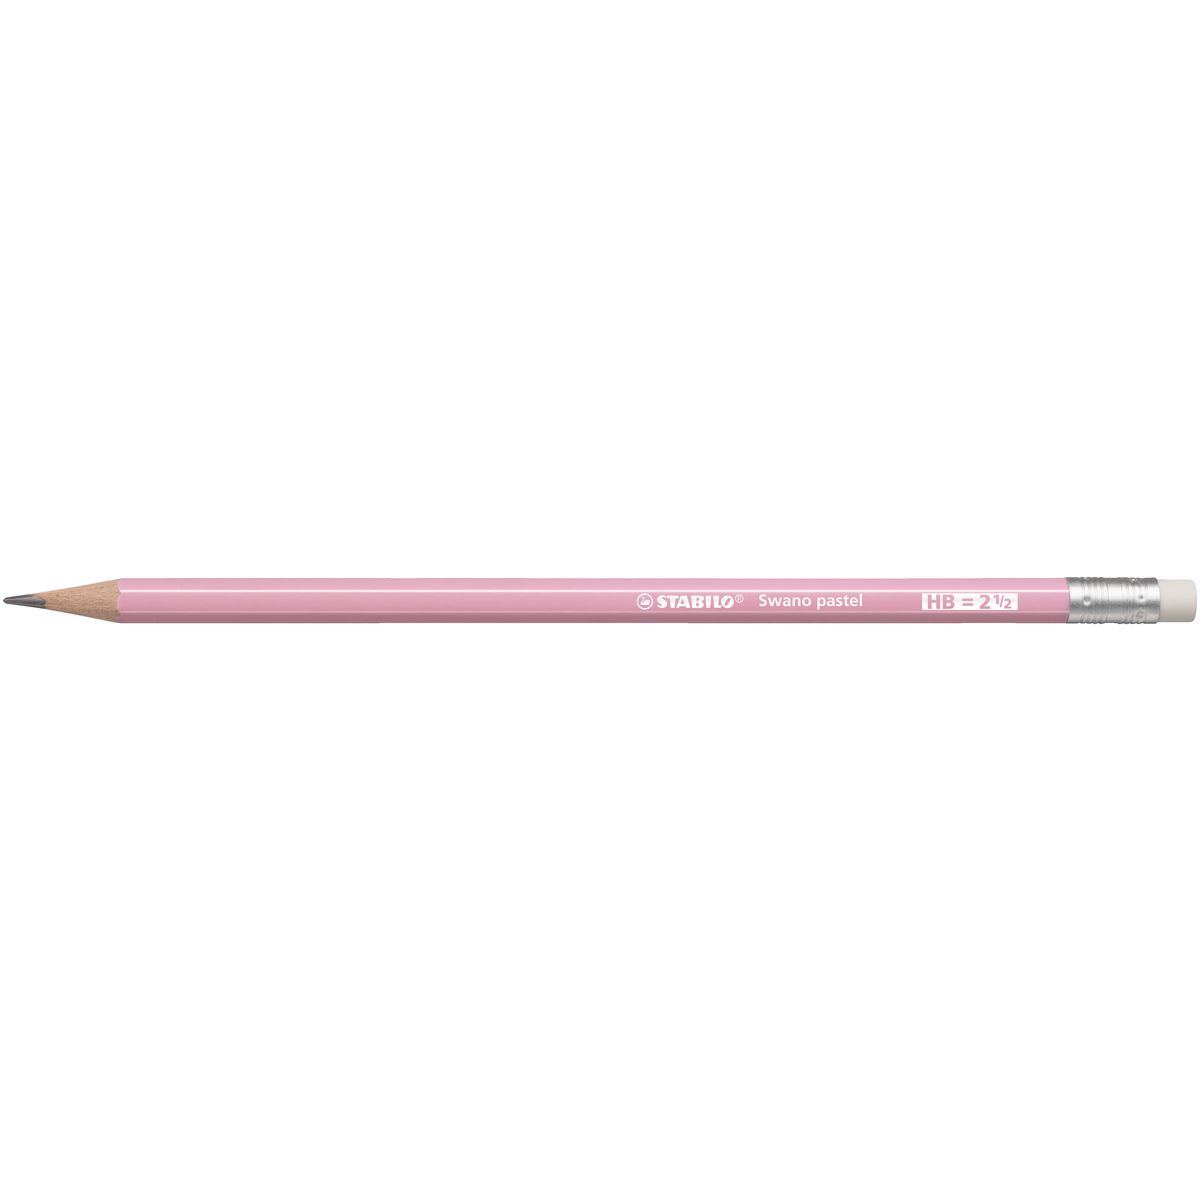 Ołówek Stabilo SWANO różowy 4006381553605 (4908/02-HB)